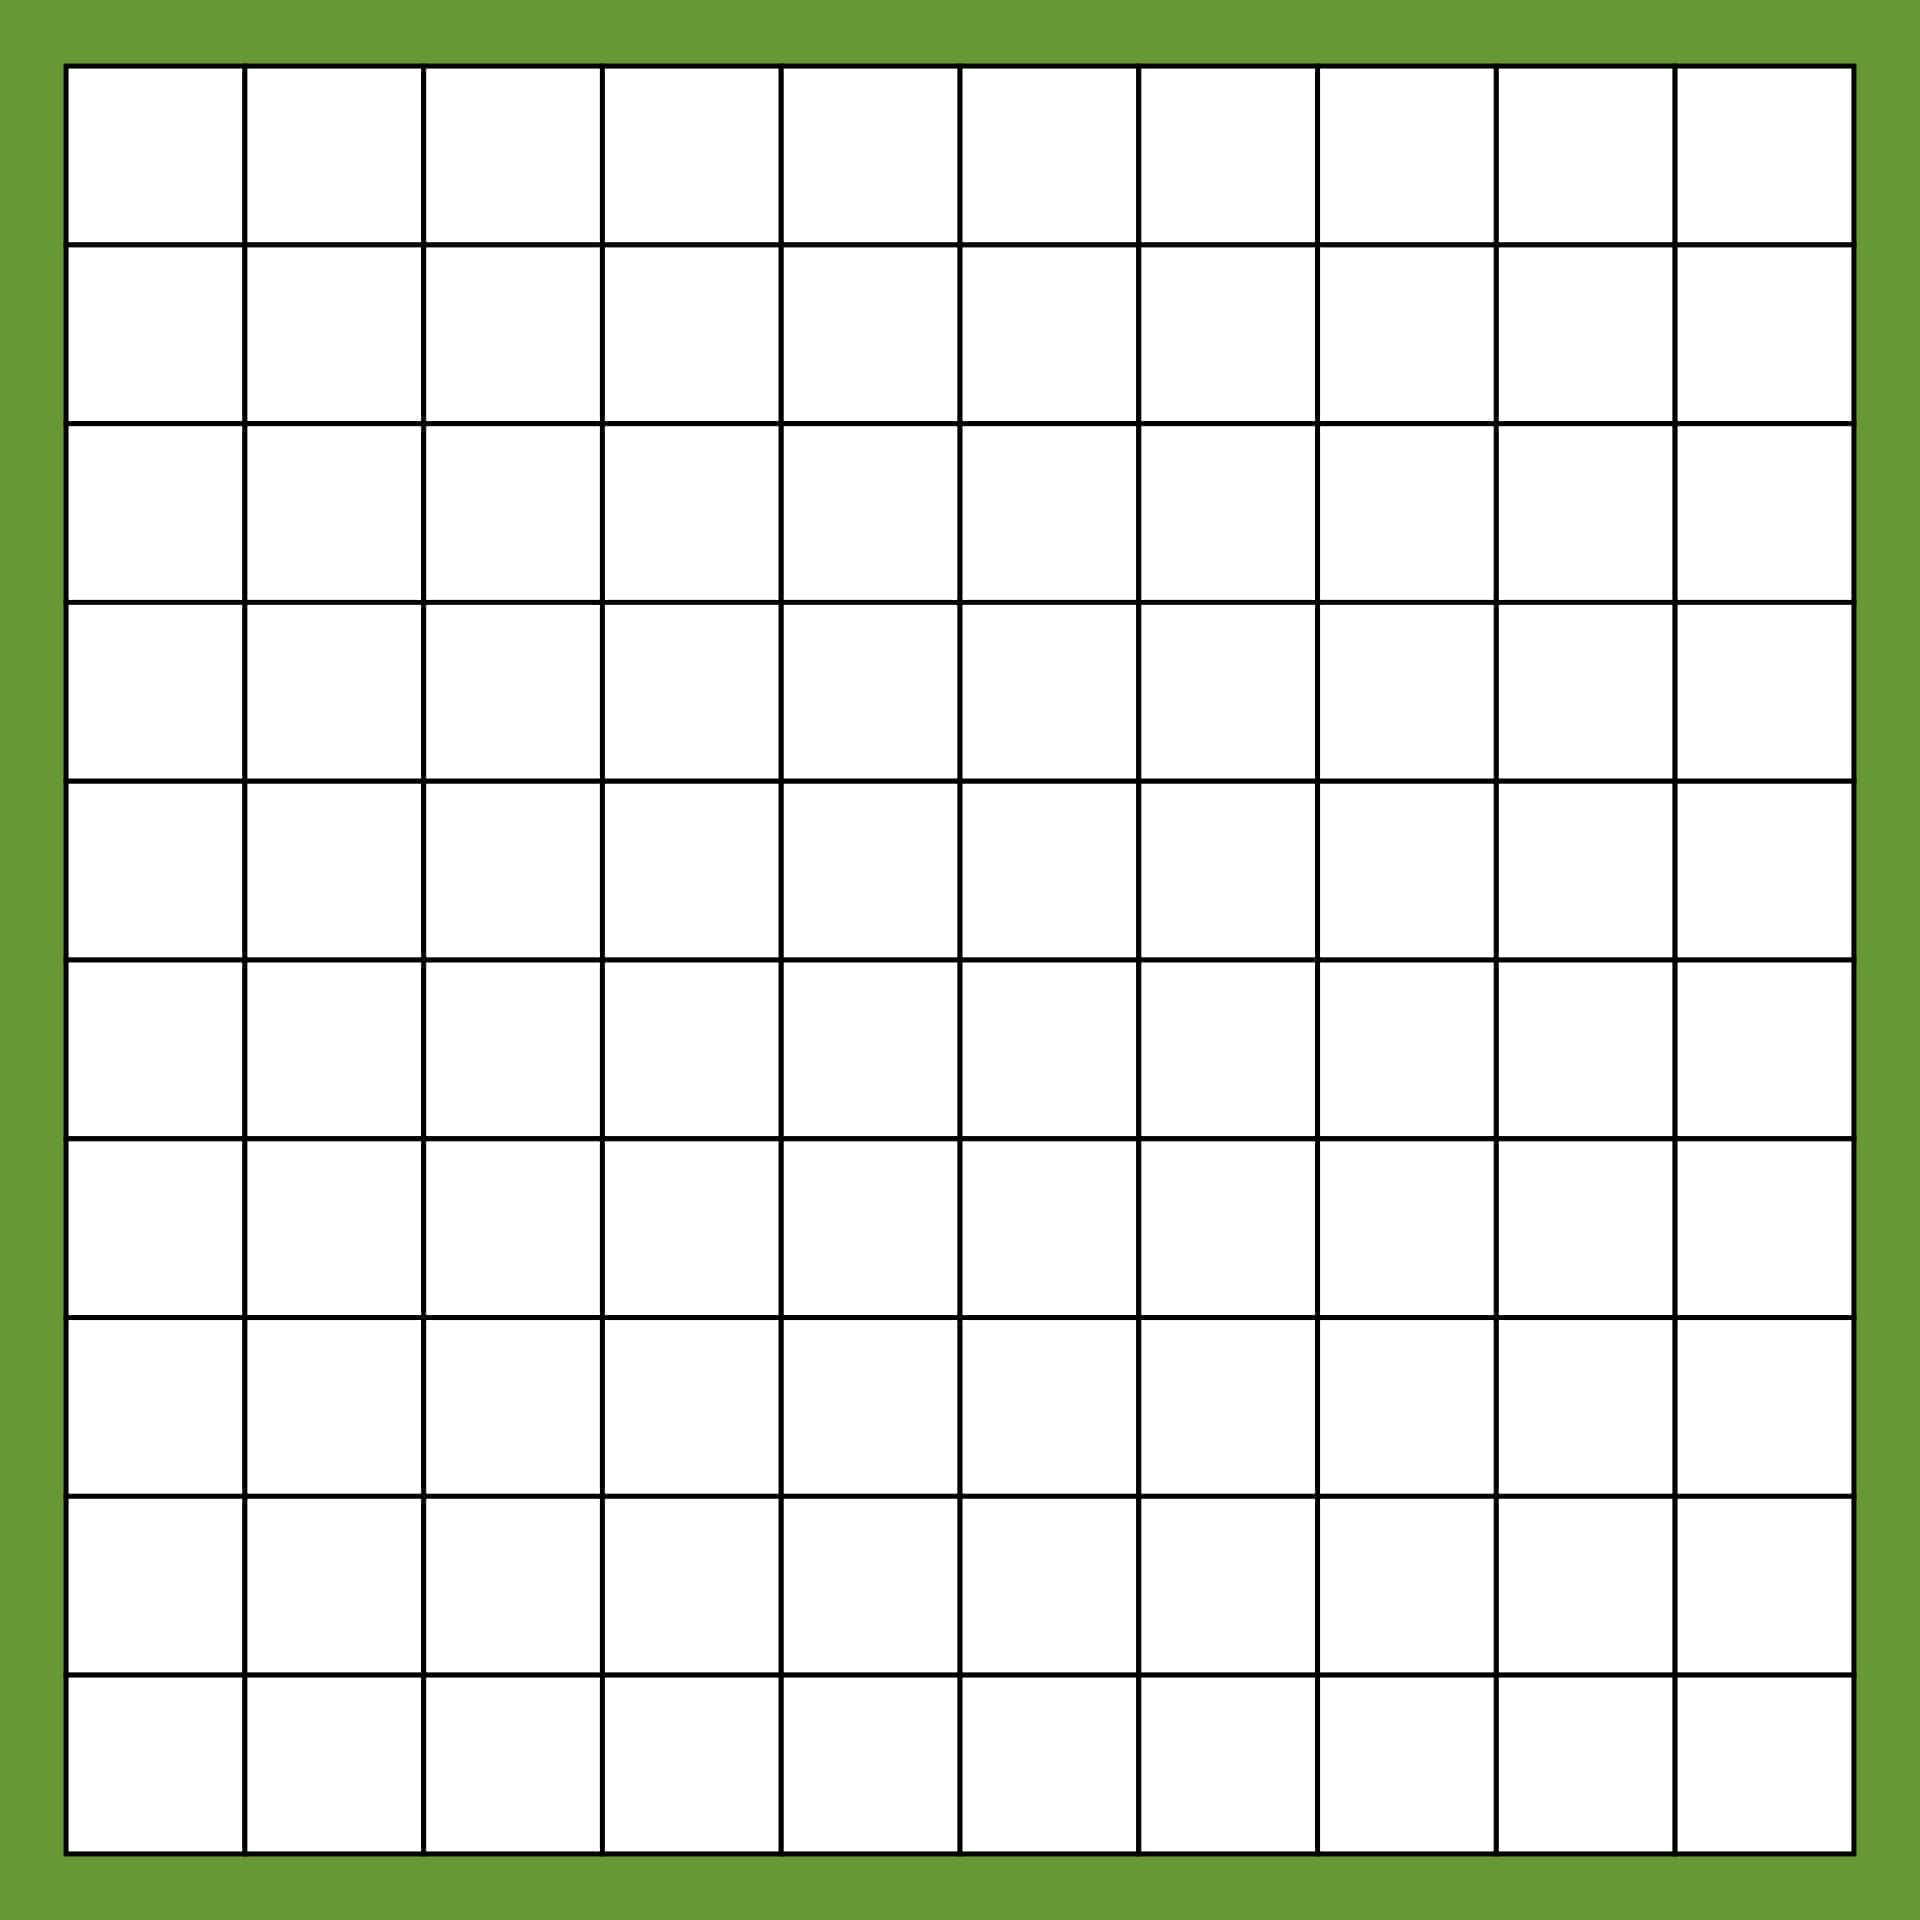 100 Square Grid Printable_63251